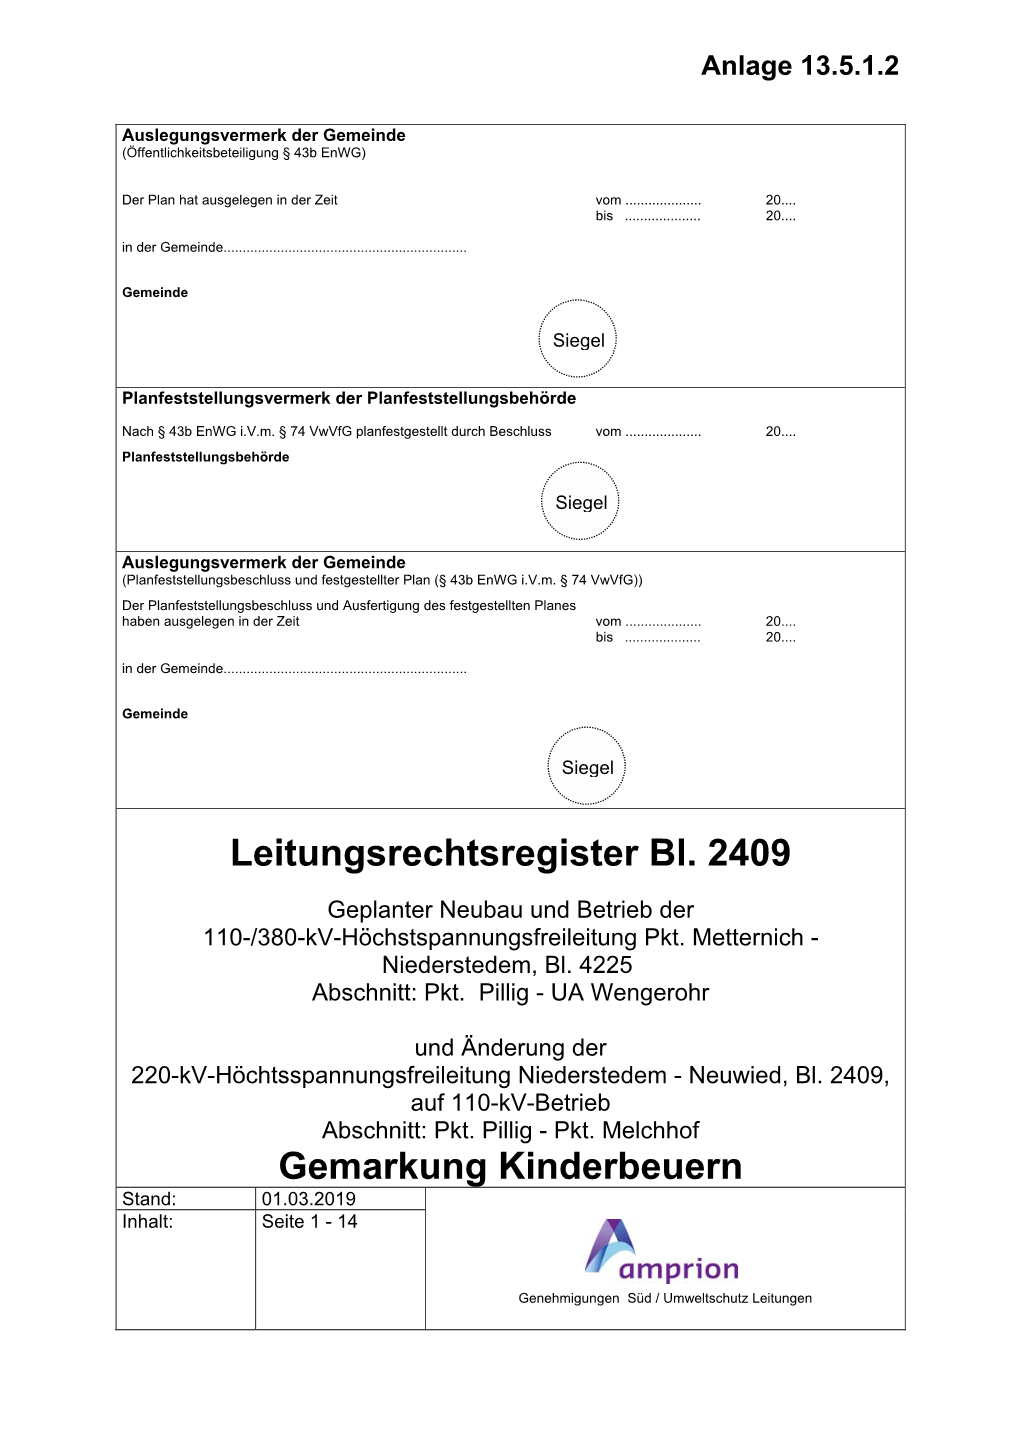 Gemarkung Kinderbeuern Stand: 01.03.2019 Inhalt: Seite 1 - 14